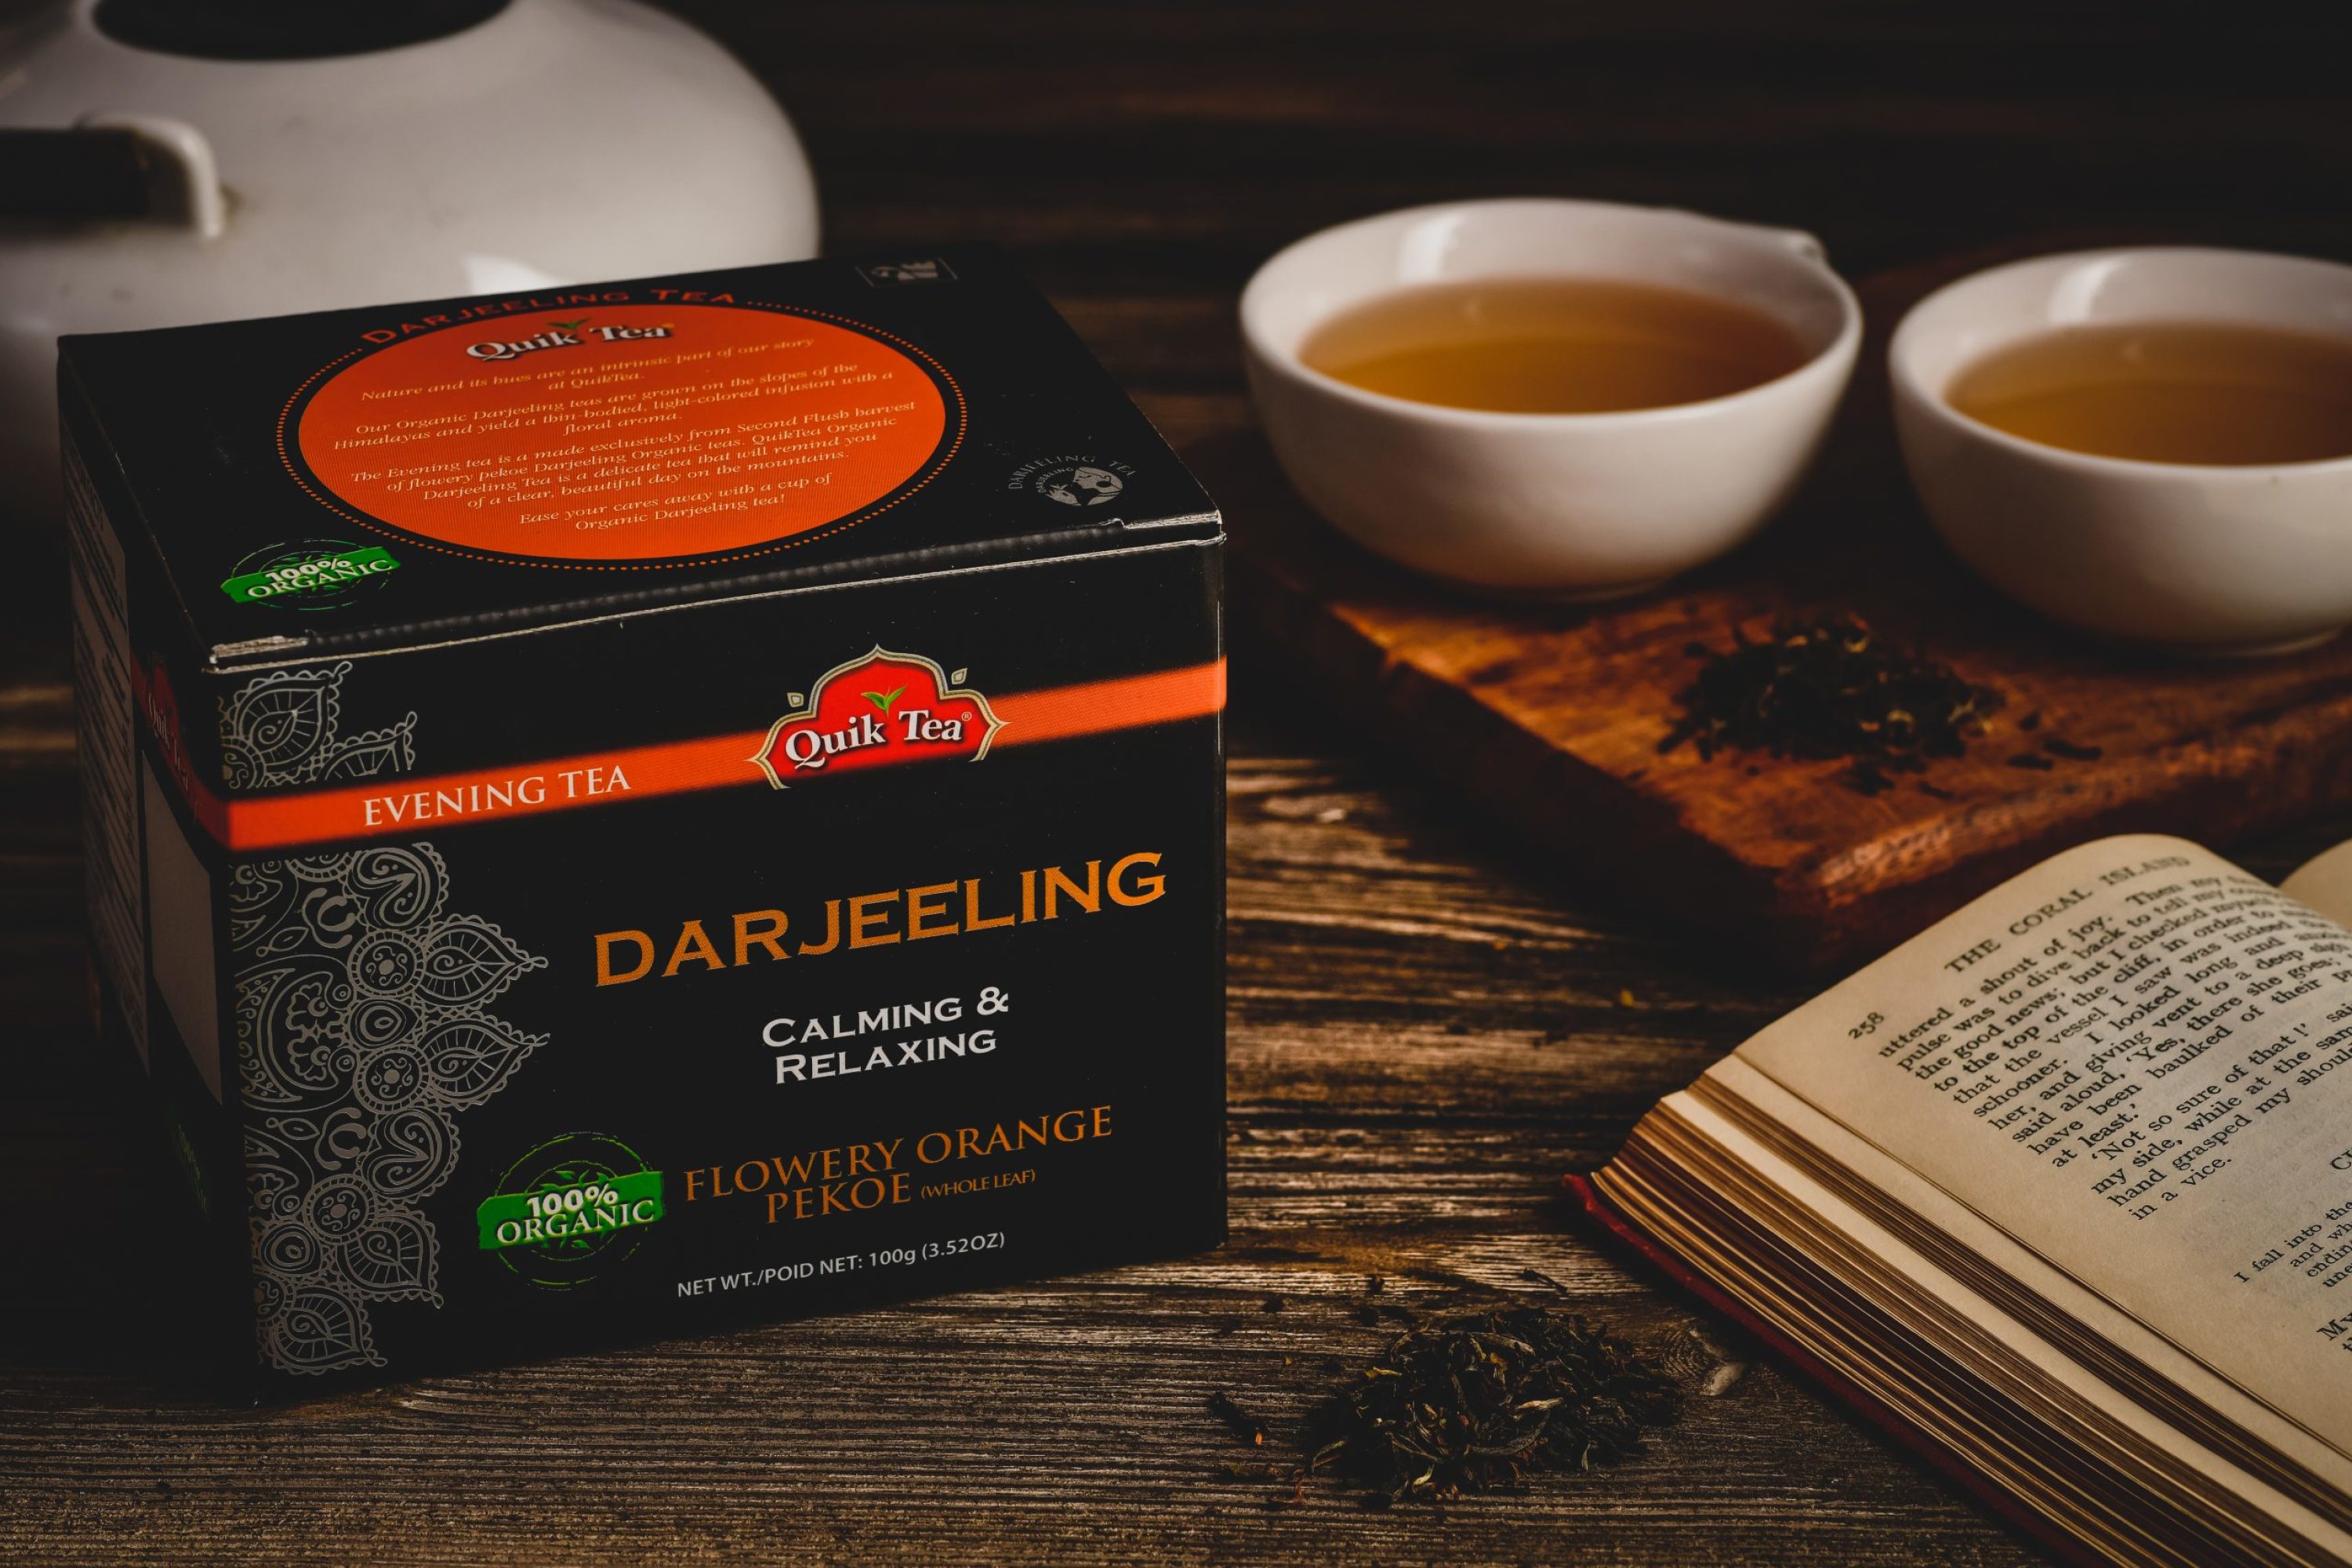 Darjeeling tea online